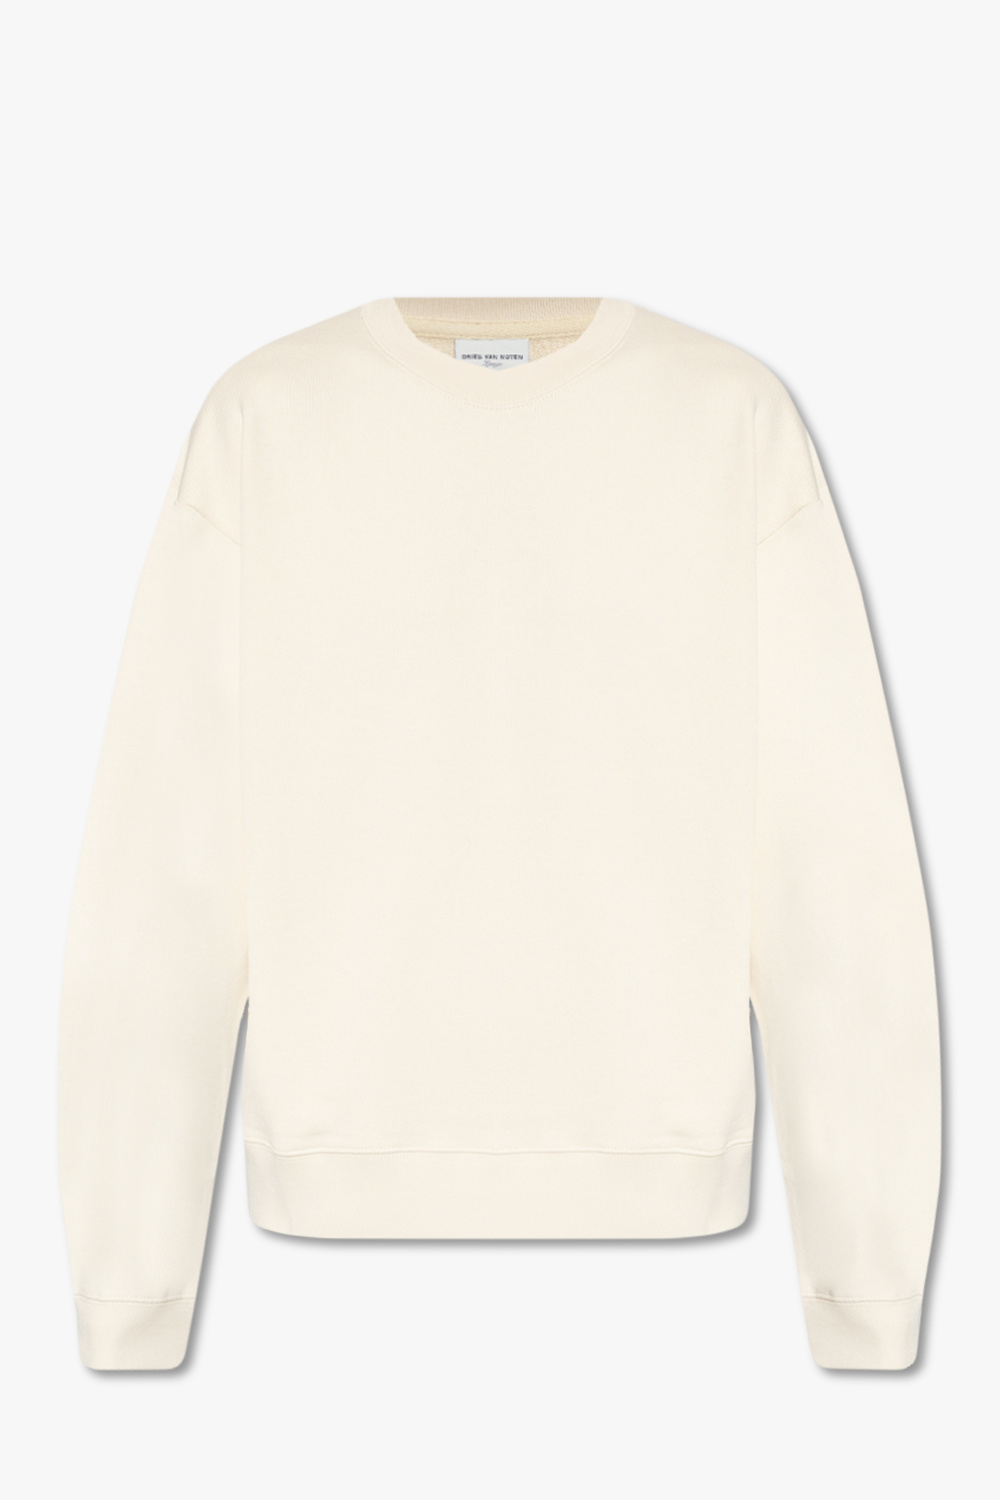 Dries Van Noten Cotton Magi sweatshirt